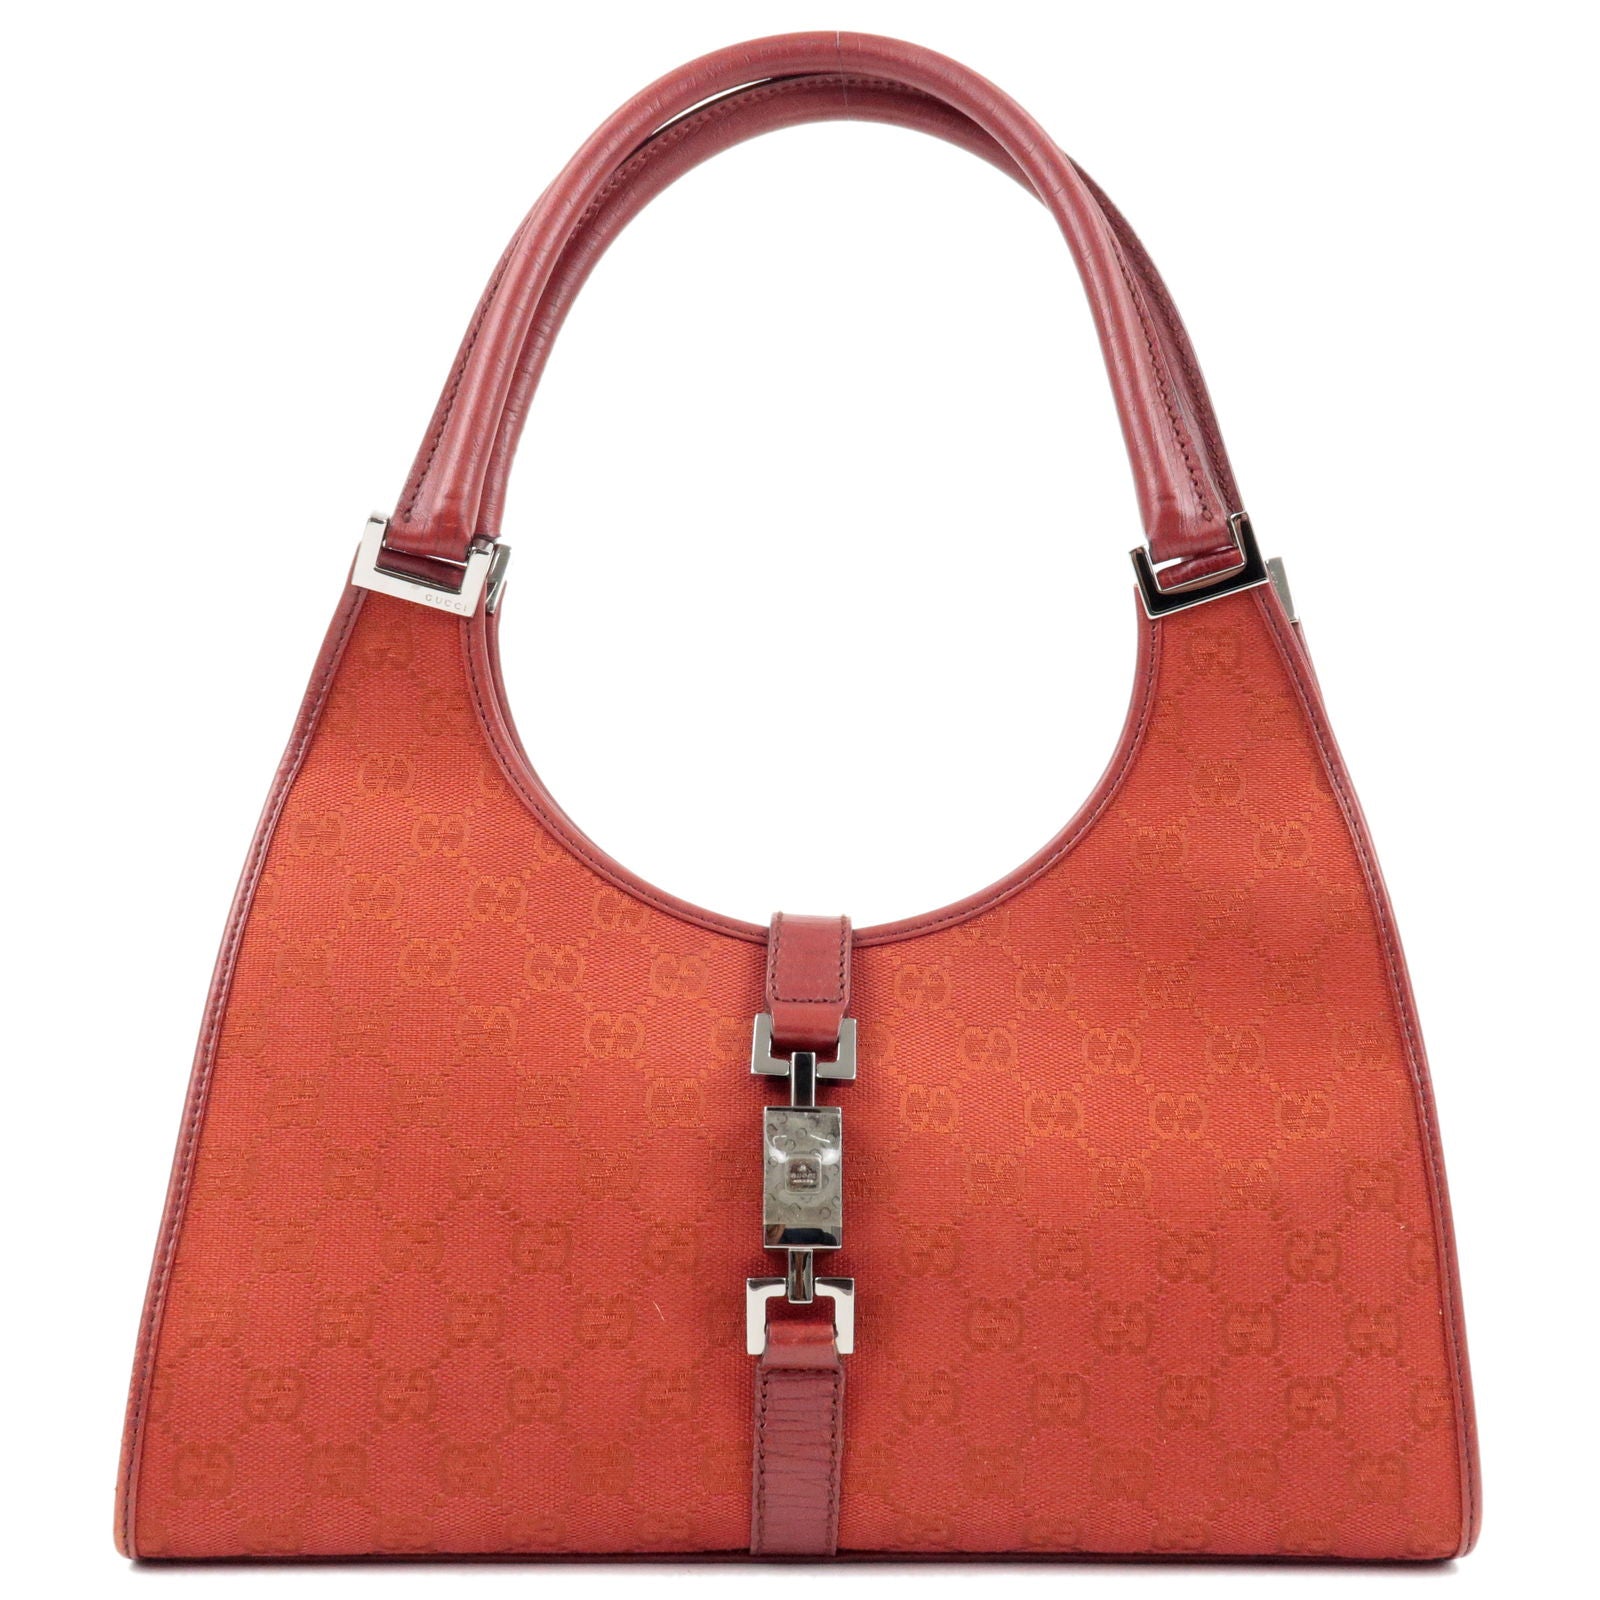 GUCCI-Jacki-GG-Canvas-Leather-Shoulder-Bag-Hand-Bag-Red-01719